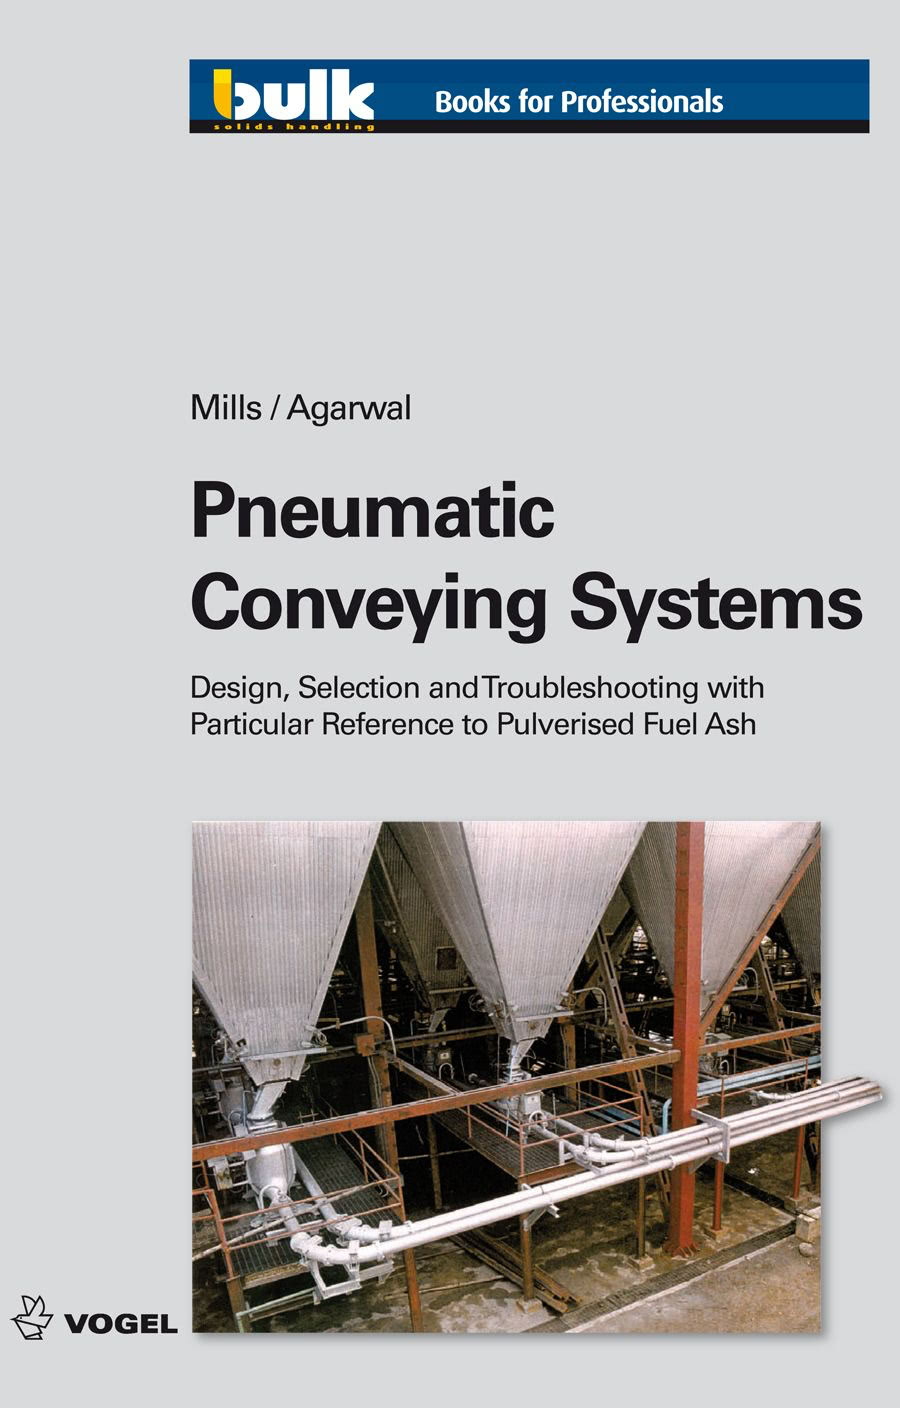 Das Fachbuch "Pneumatic Conveying Systems" von David Mills und Vijay Agarwal